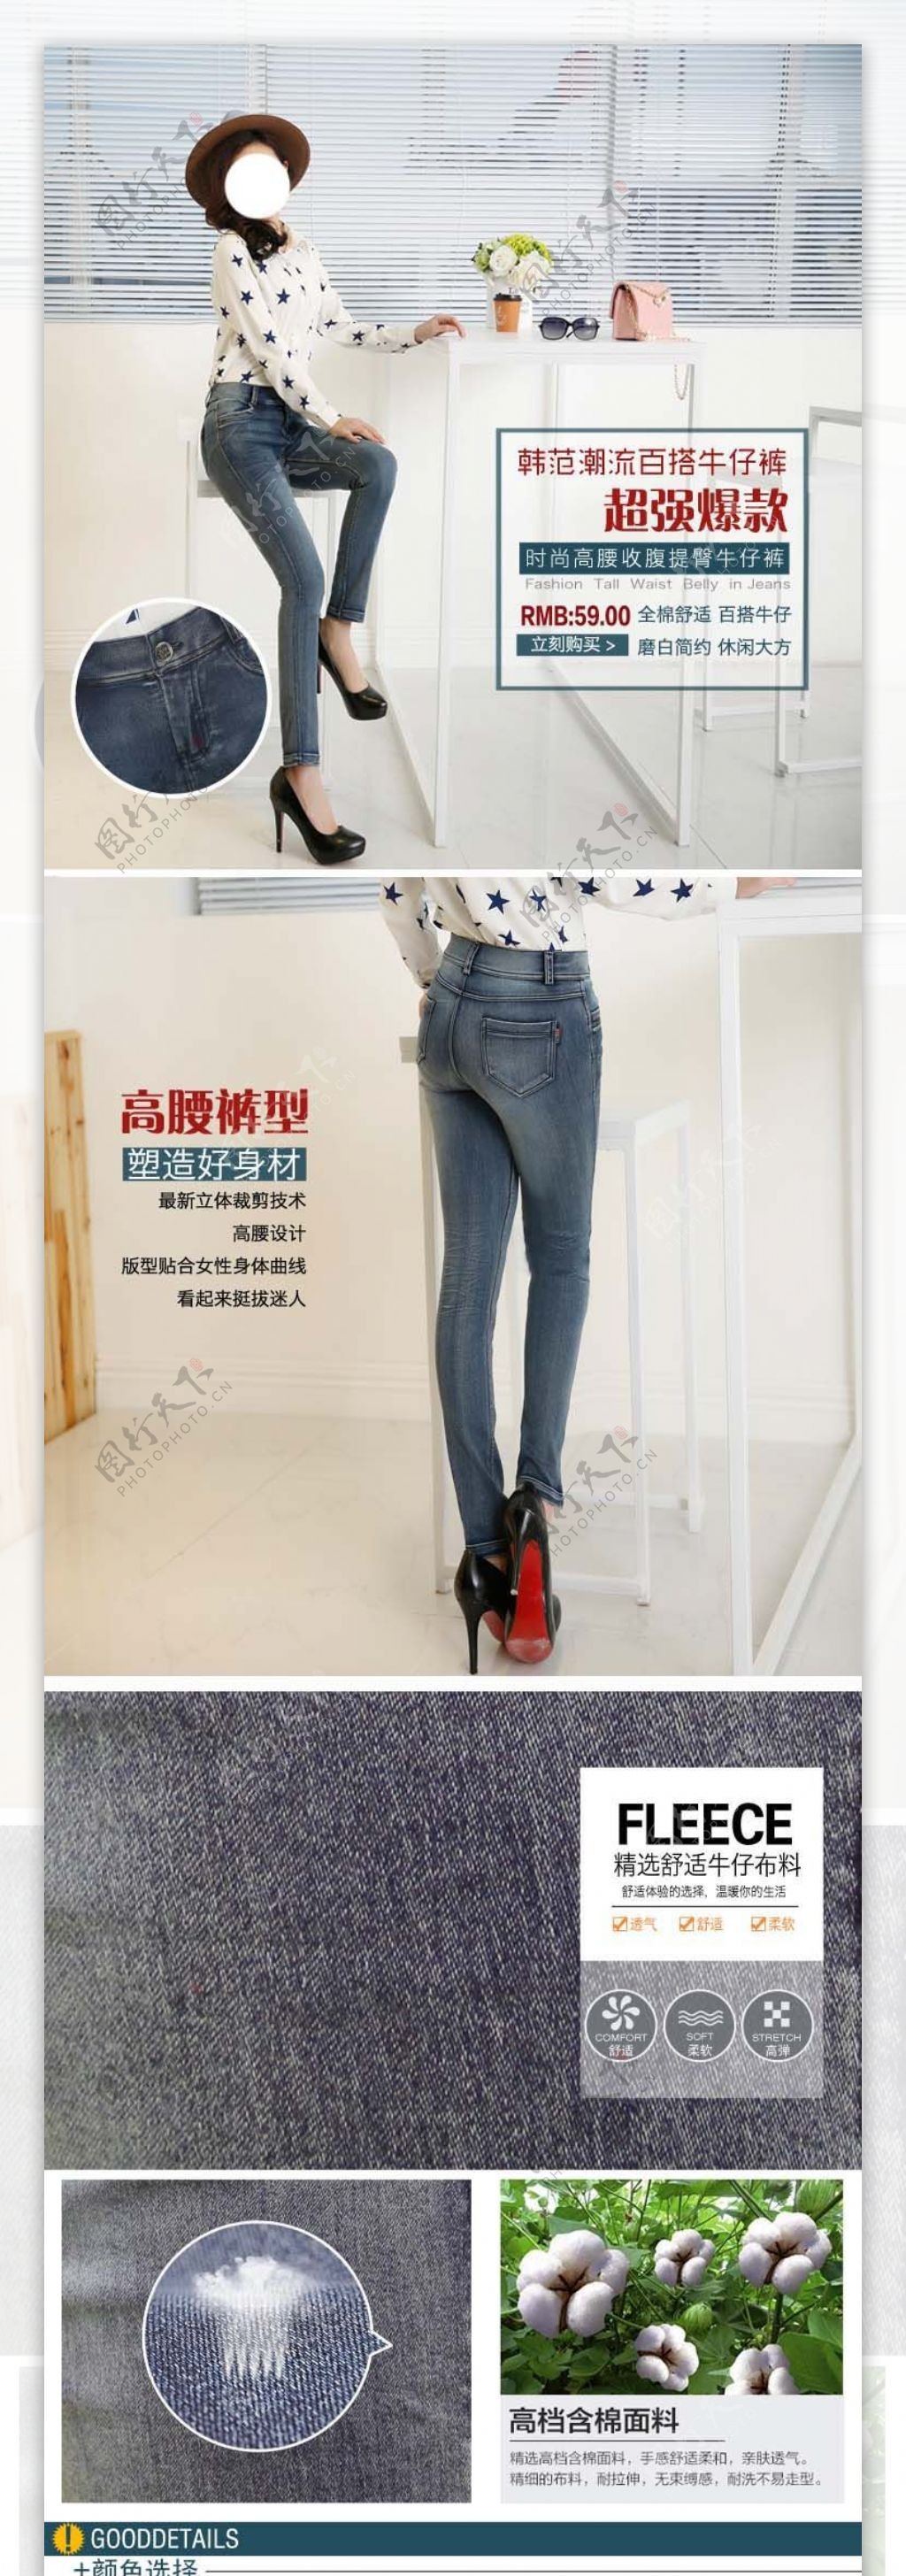 韩版女式牛仔裤详情页模板设计